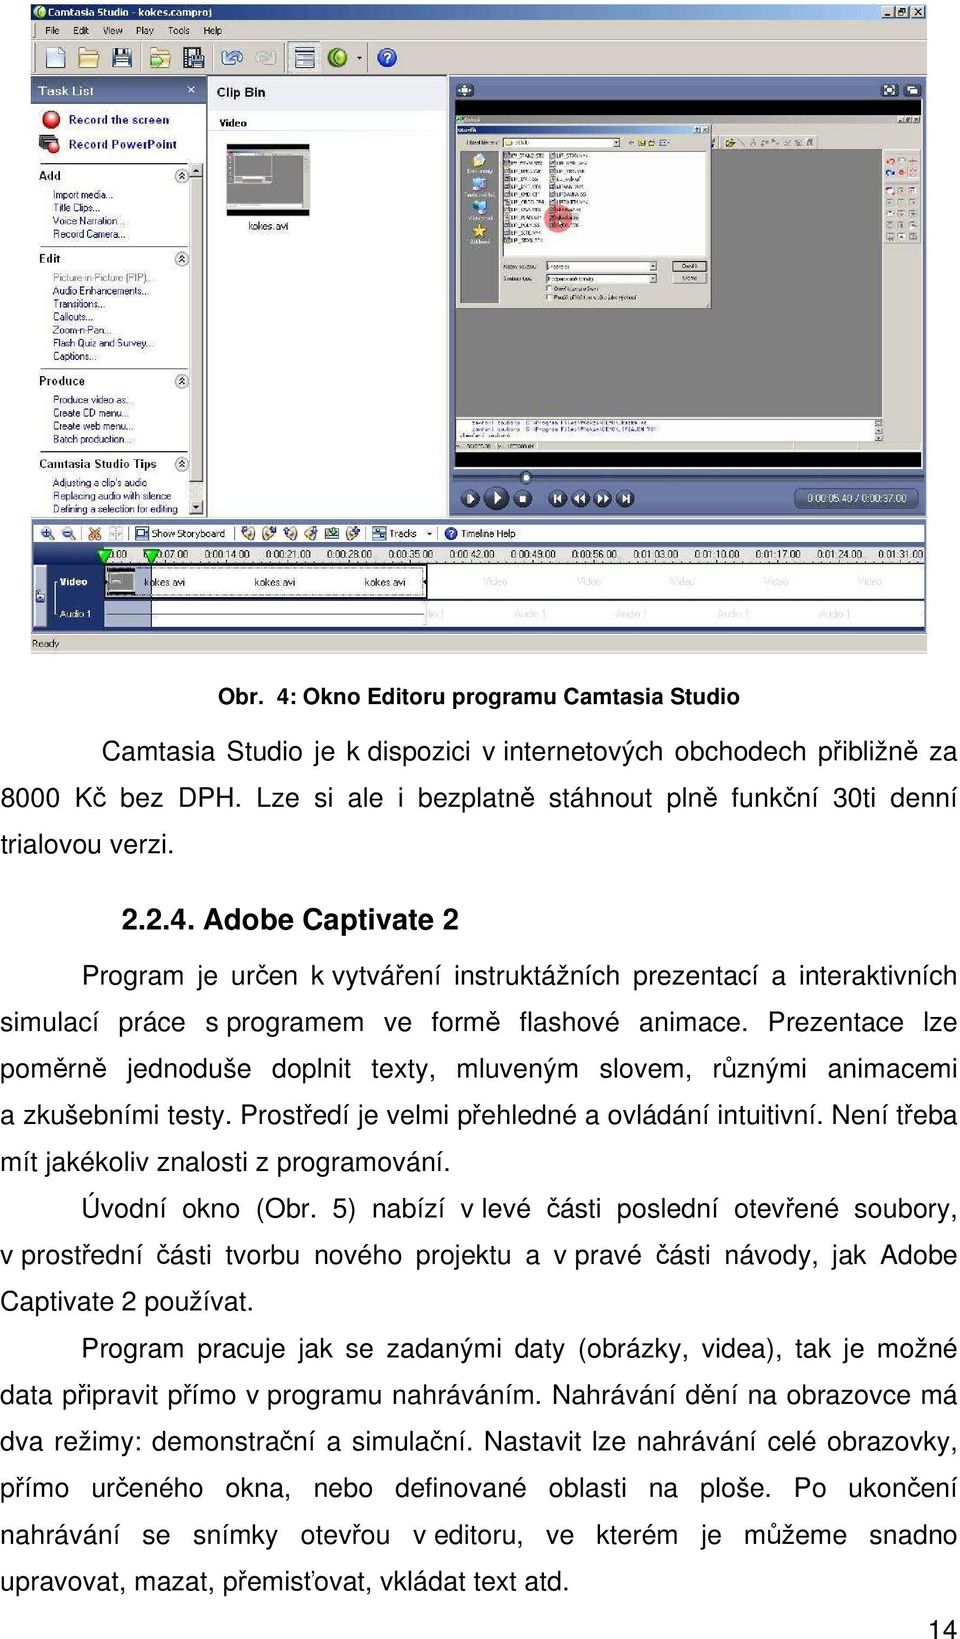 Adobe Captivate 2 Program je určen k vytváření instruktážních prezentací a interaktivních simulací práce s programem ve formě flashové animace.